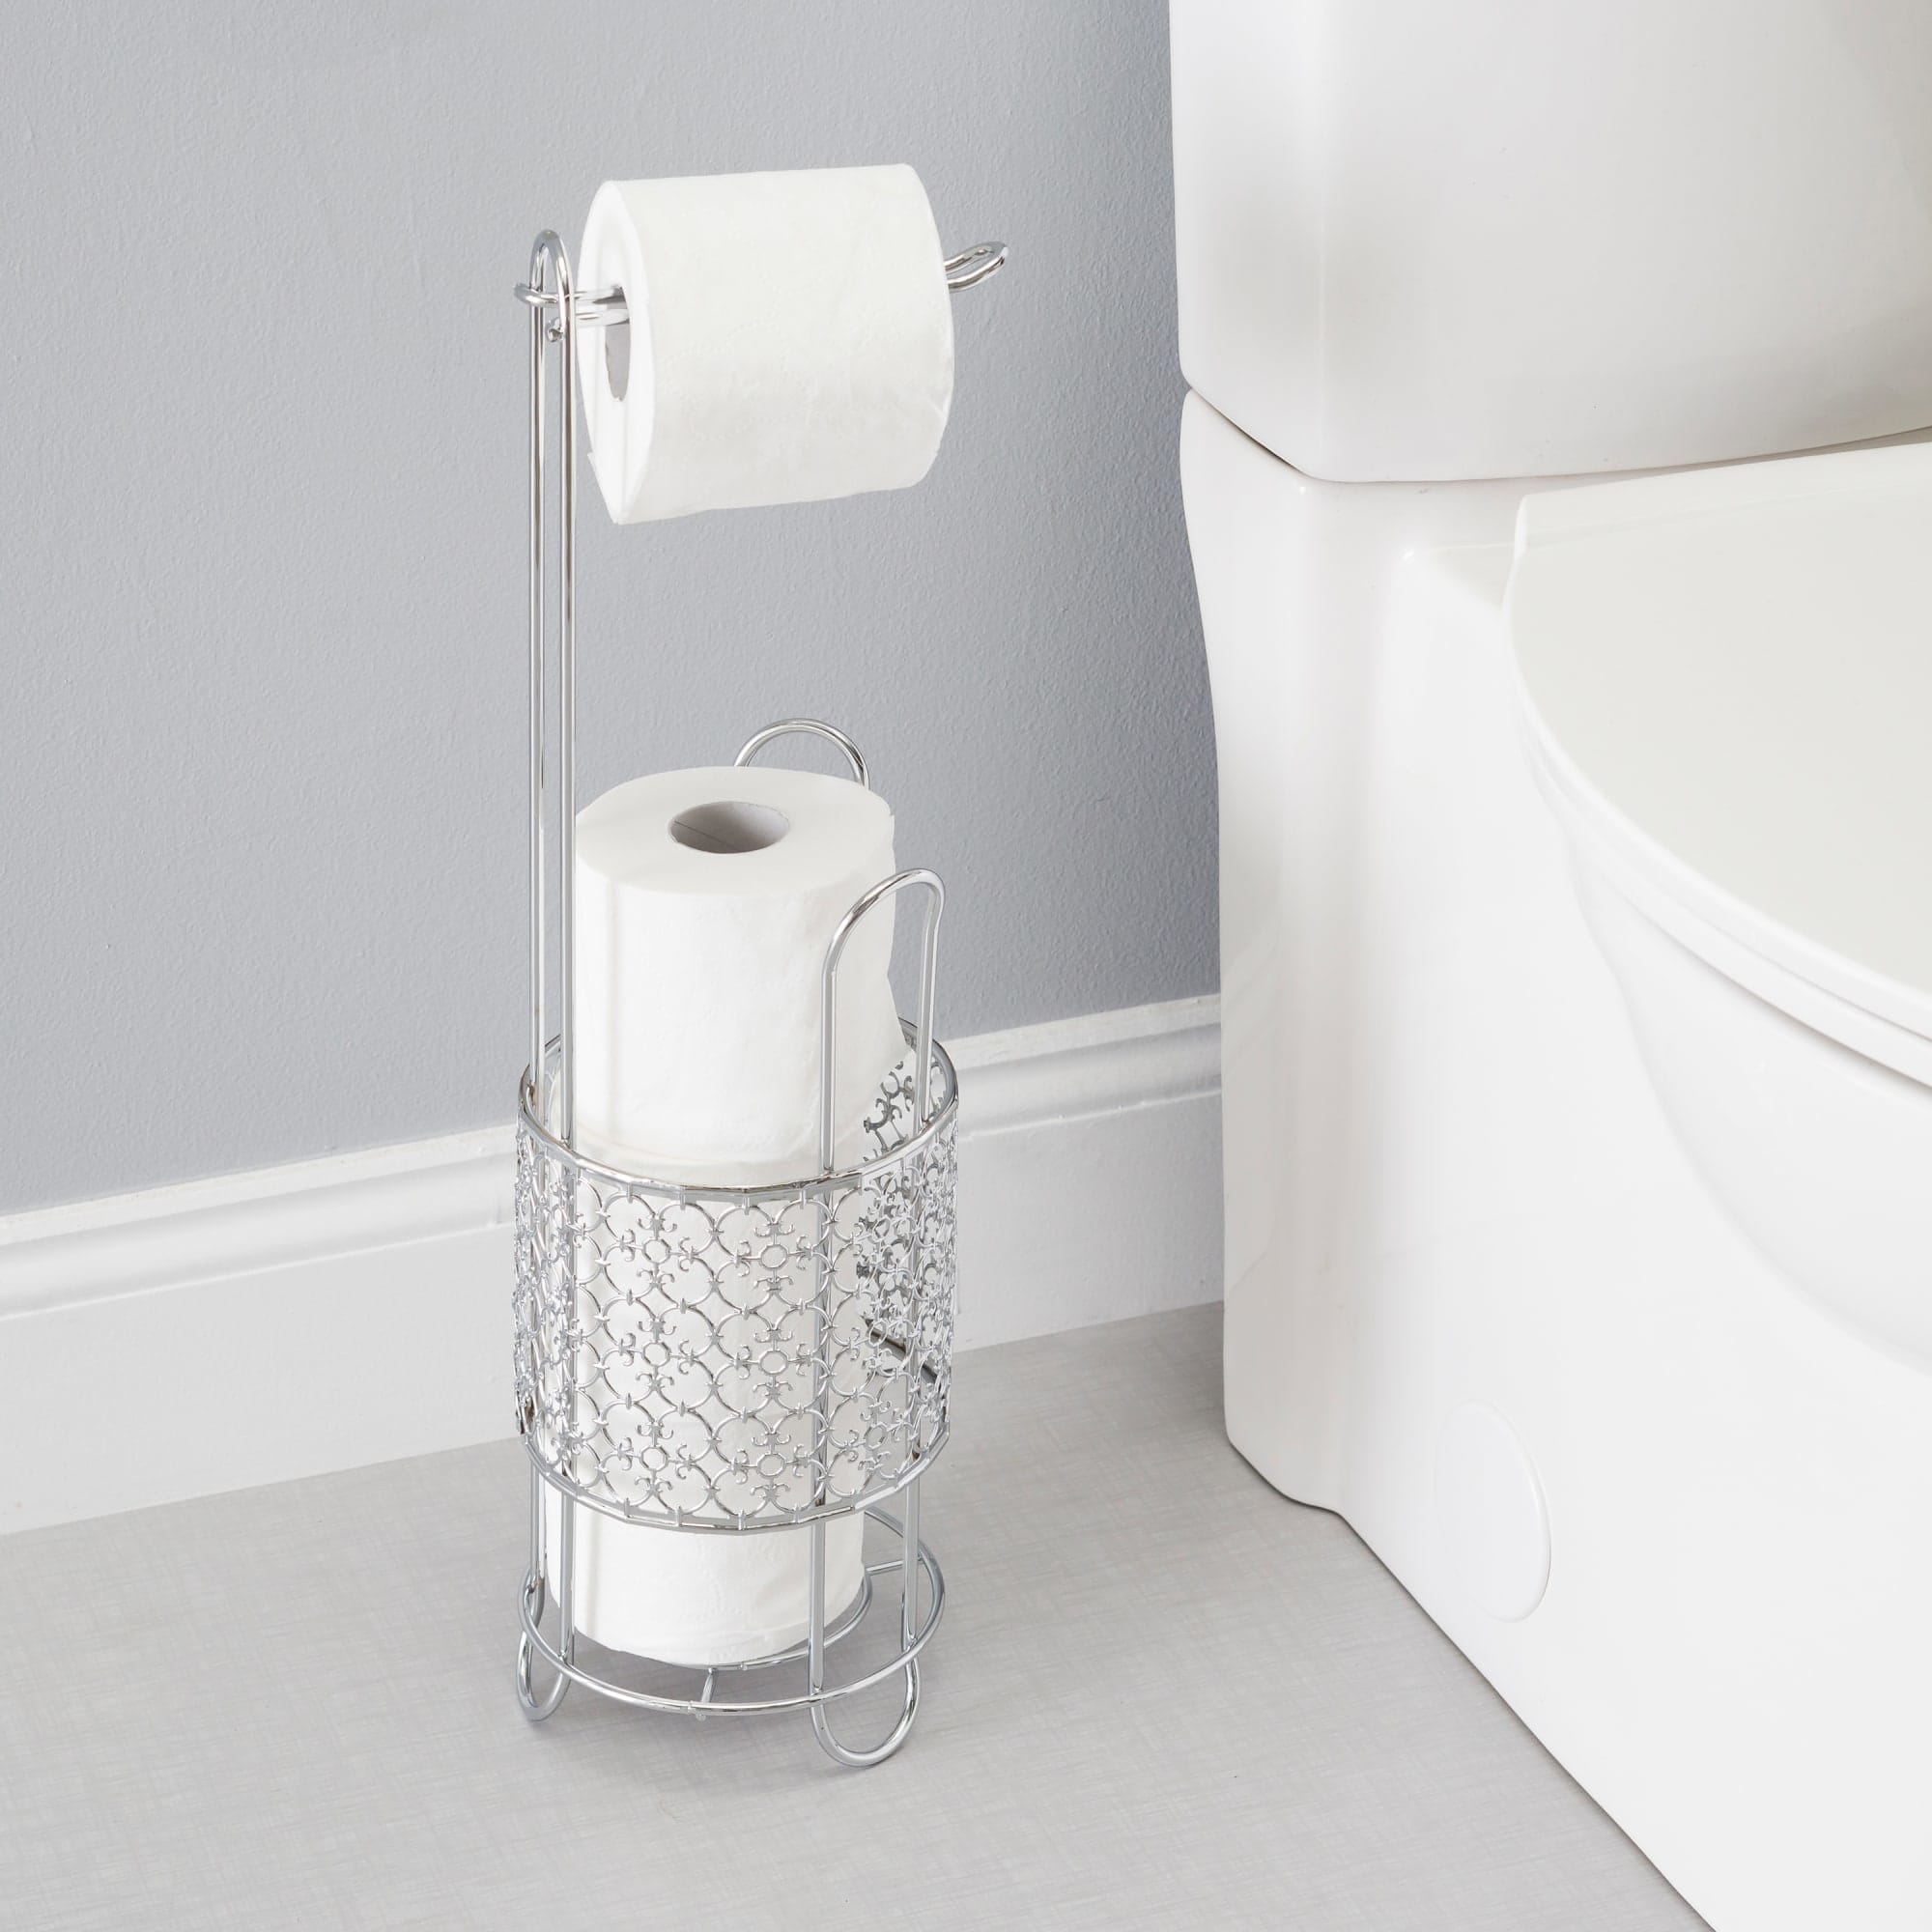 Home Basics Free Standing Dispensing Toilet Paper Holder, Chrome $15.00 EACH, CASE PACK OF 6